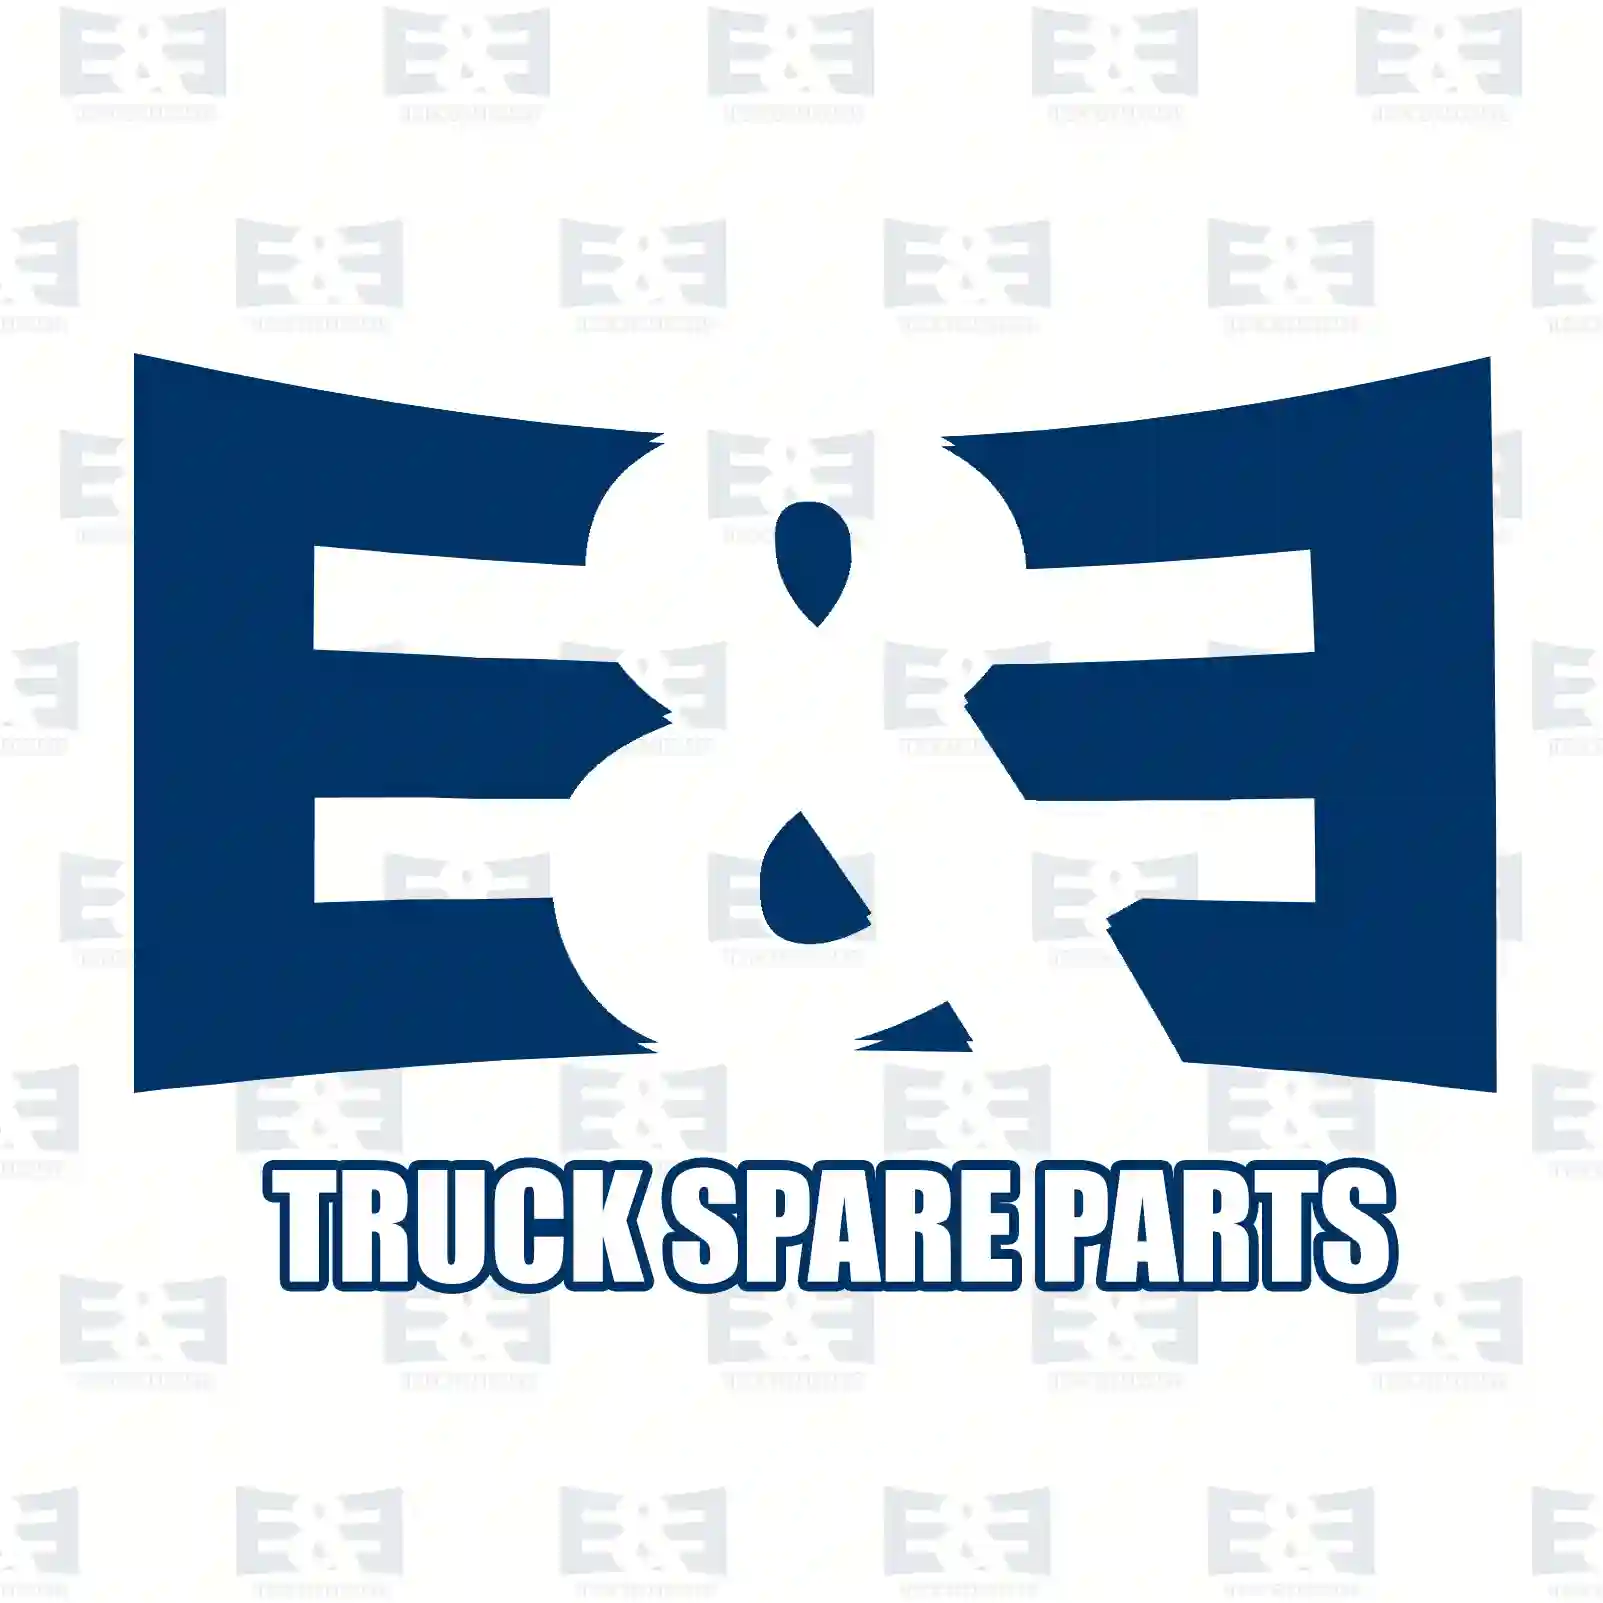 Console, Cabin Suspension Expanding rivet, EE No 2E2276121 ,  oem no:51470146782, 51470390017, 51471911992, 1299900092, 2019900292, 20199002927B90, 20199002927C72, 20199002929051, M820141, 2019900292, 30820141 E&E Truck Spare Parts | Truck Spare Parts, Auotomotive Spare Parts